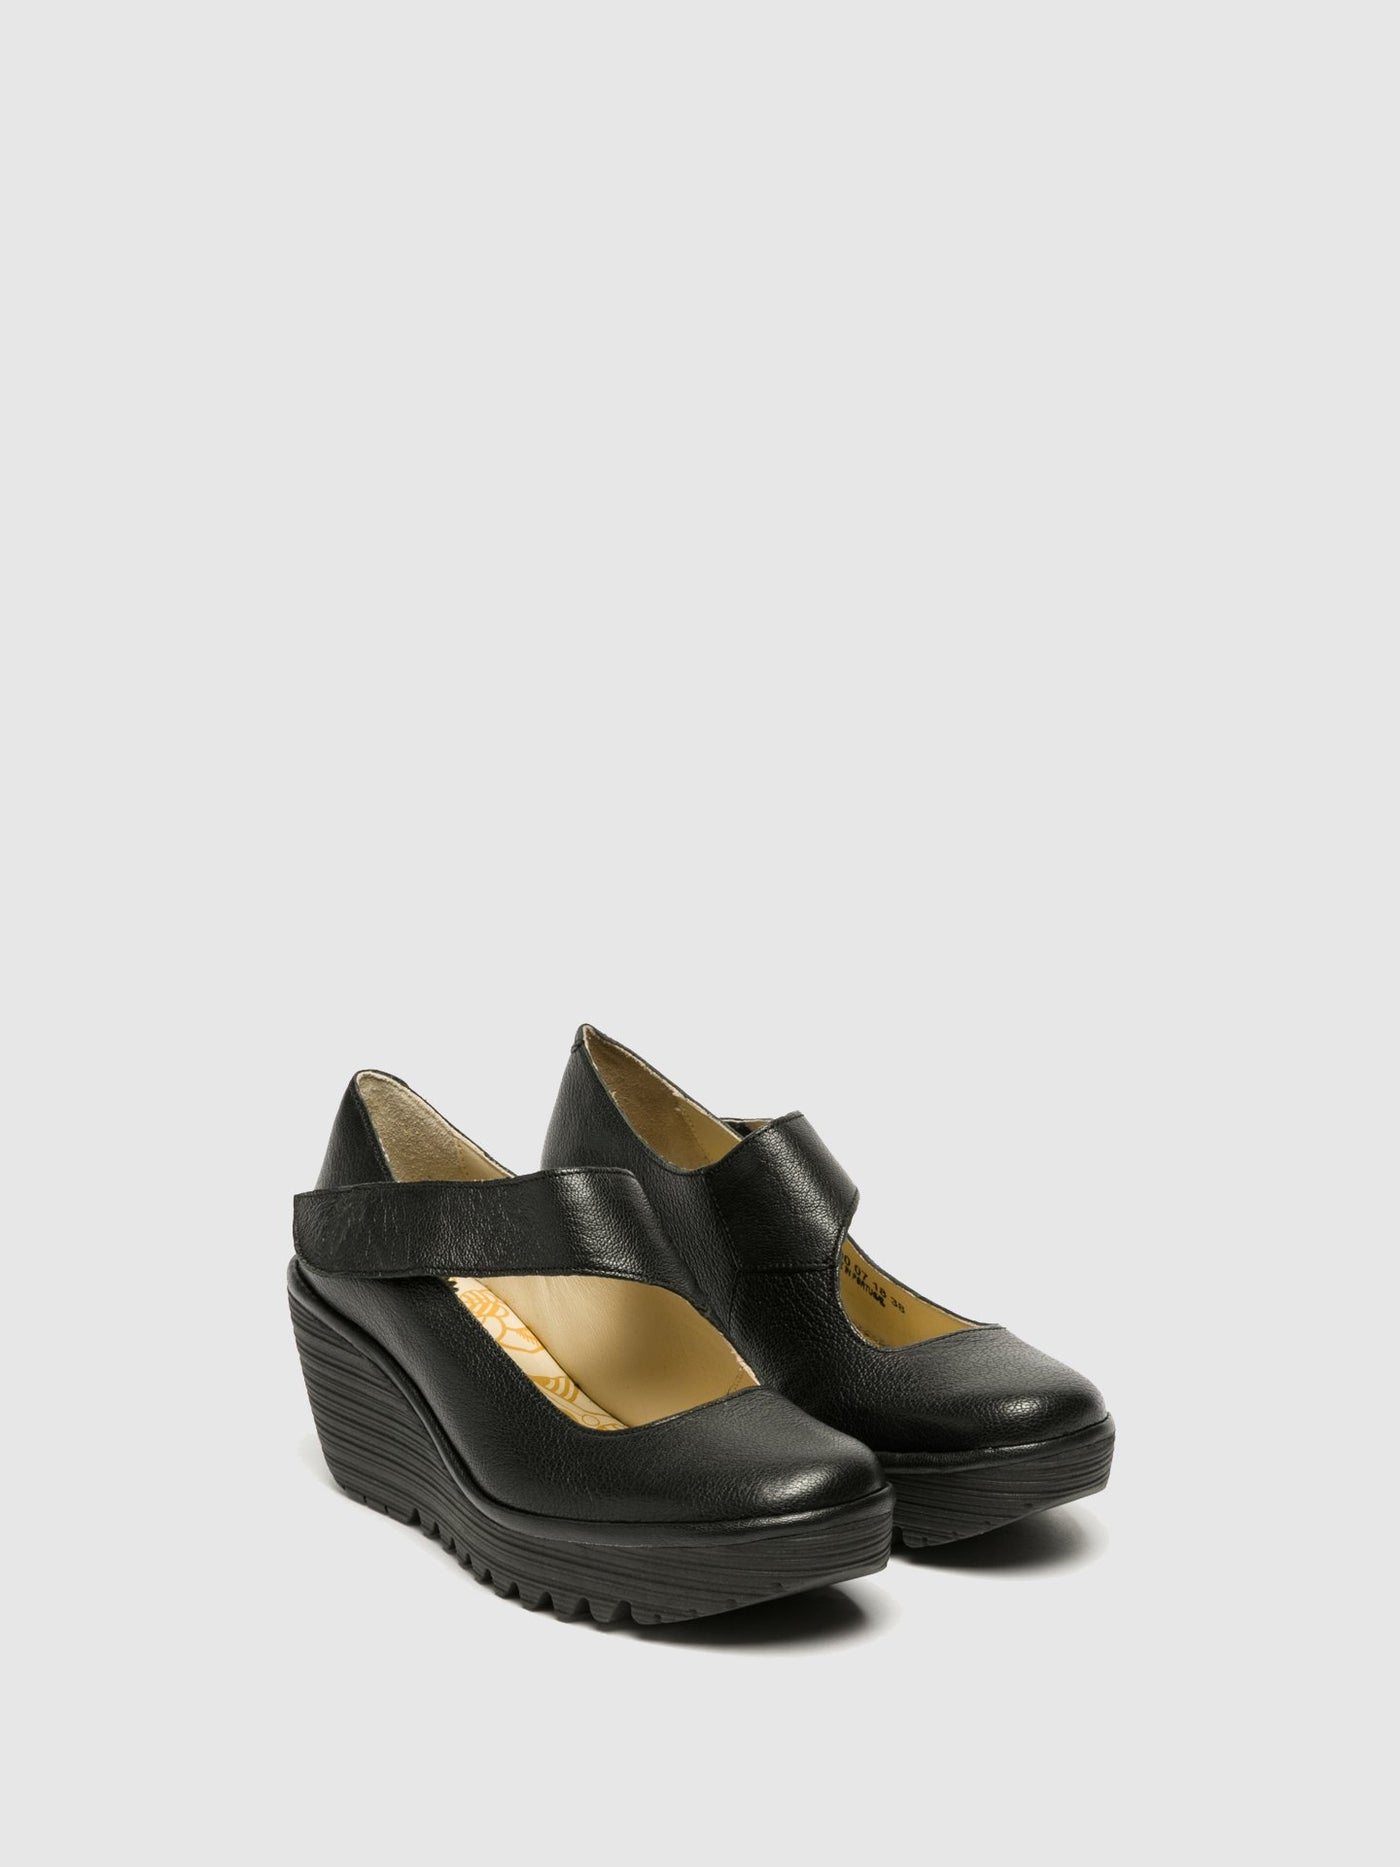 Mary Jane Shoes YASI682FLY MOUSSE BLACK